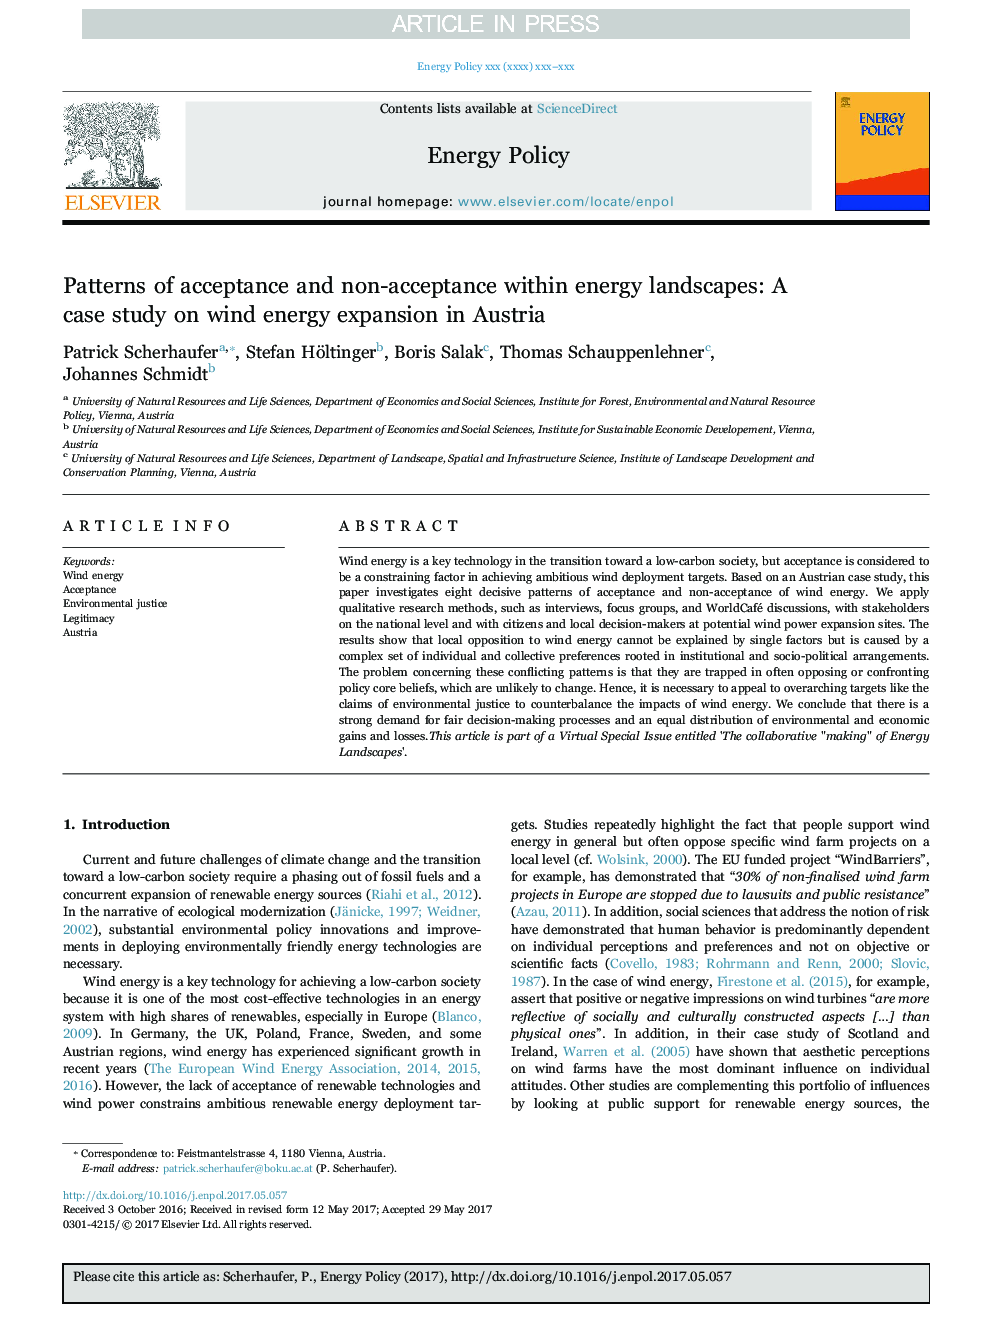 الگوهای پذیرش و عدم پذیرش در مناظر انرژی: مطالعه موردی در مورد گسترش انرژی باد در اتریش 